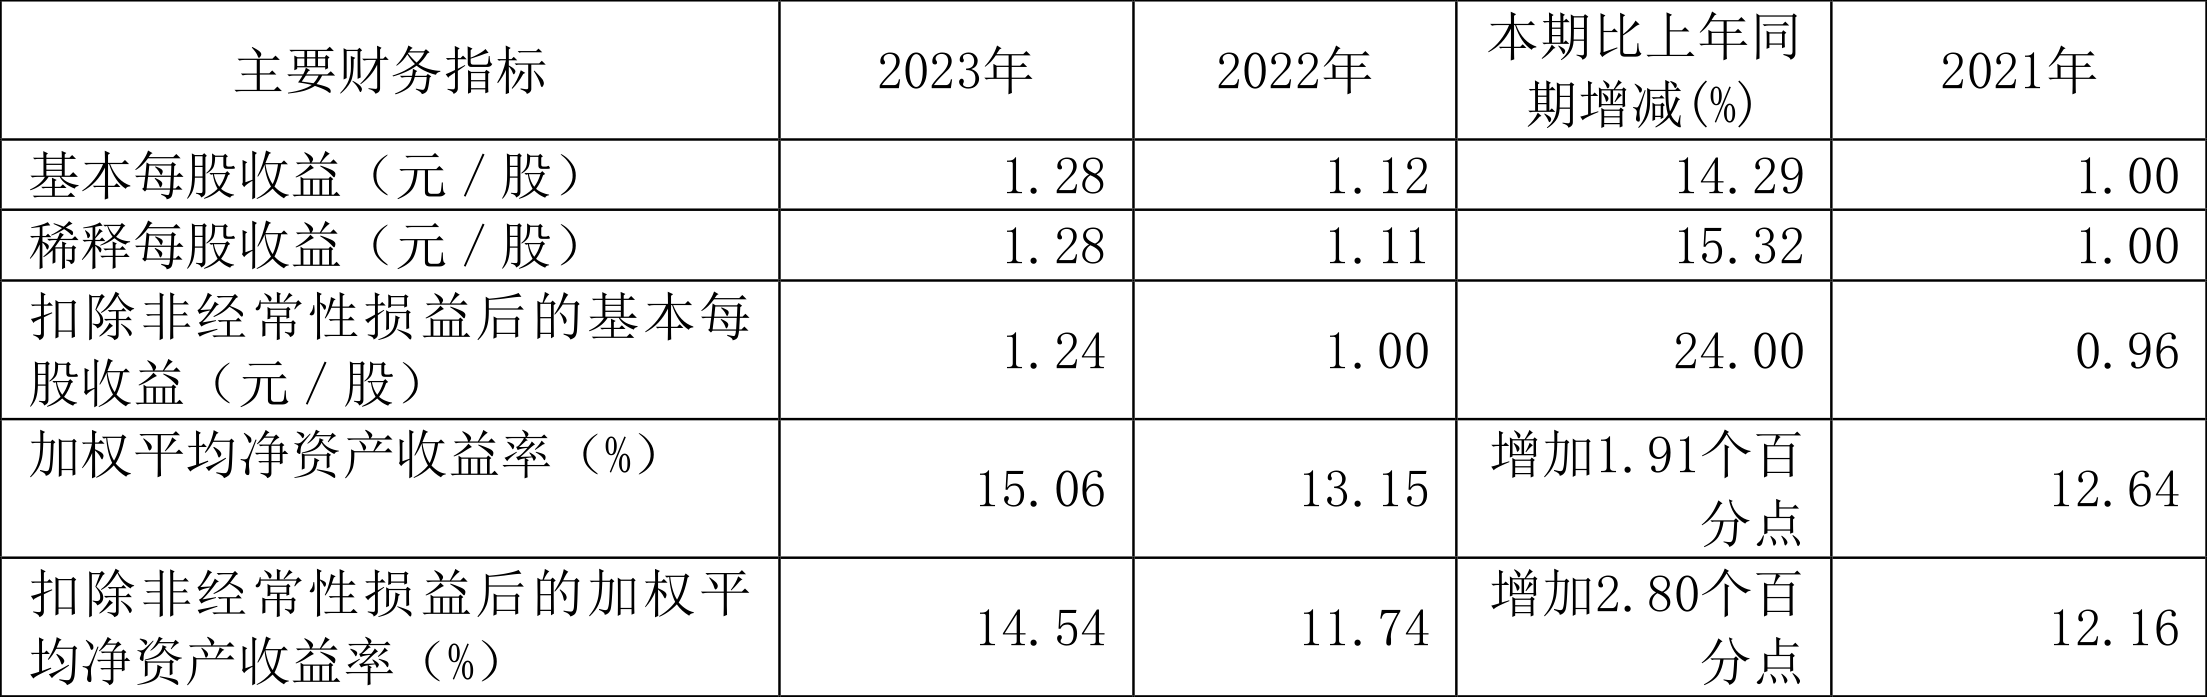 达仁堂：2023年净利润同比增长14.49% 拟10派12.8元